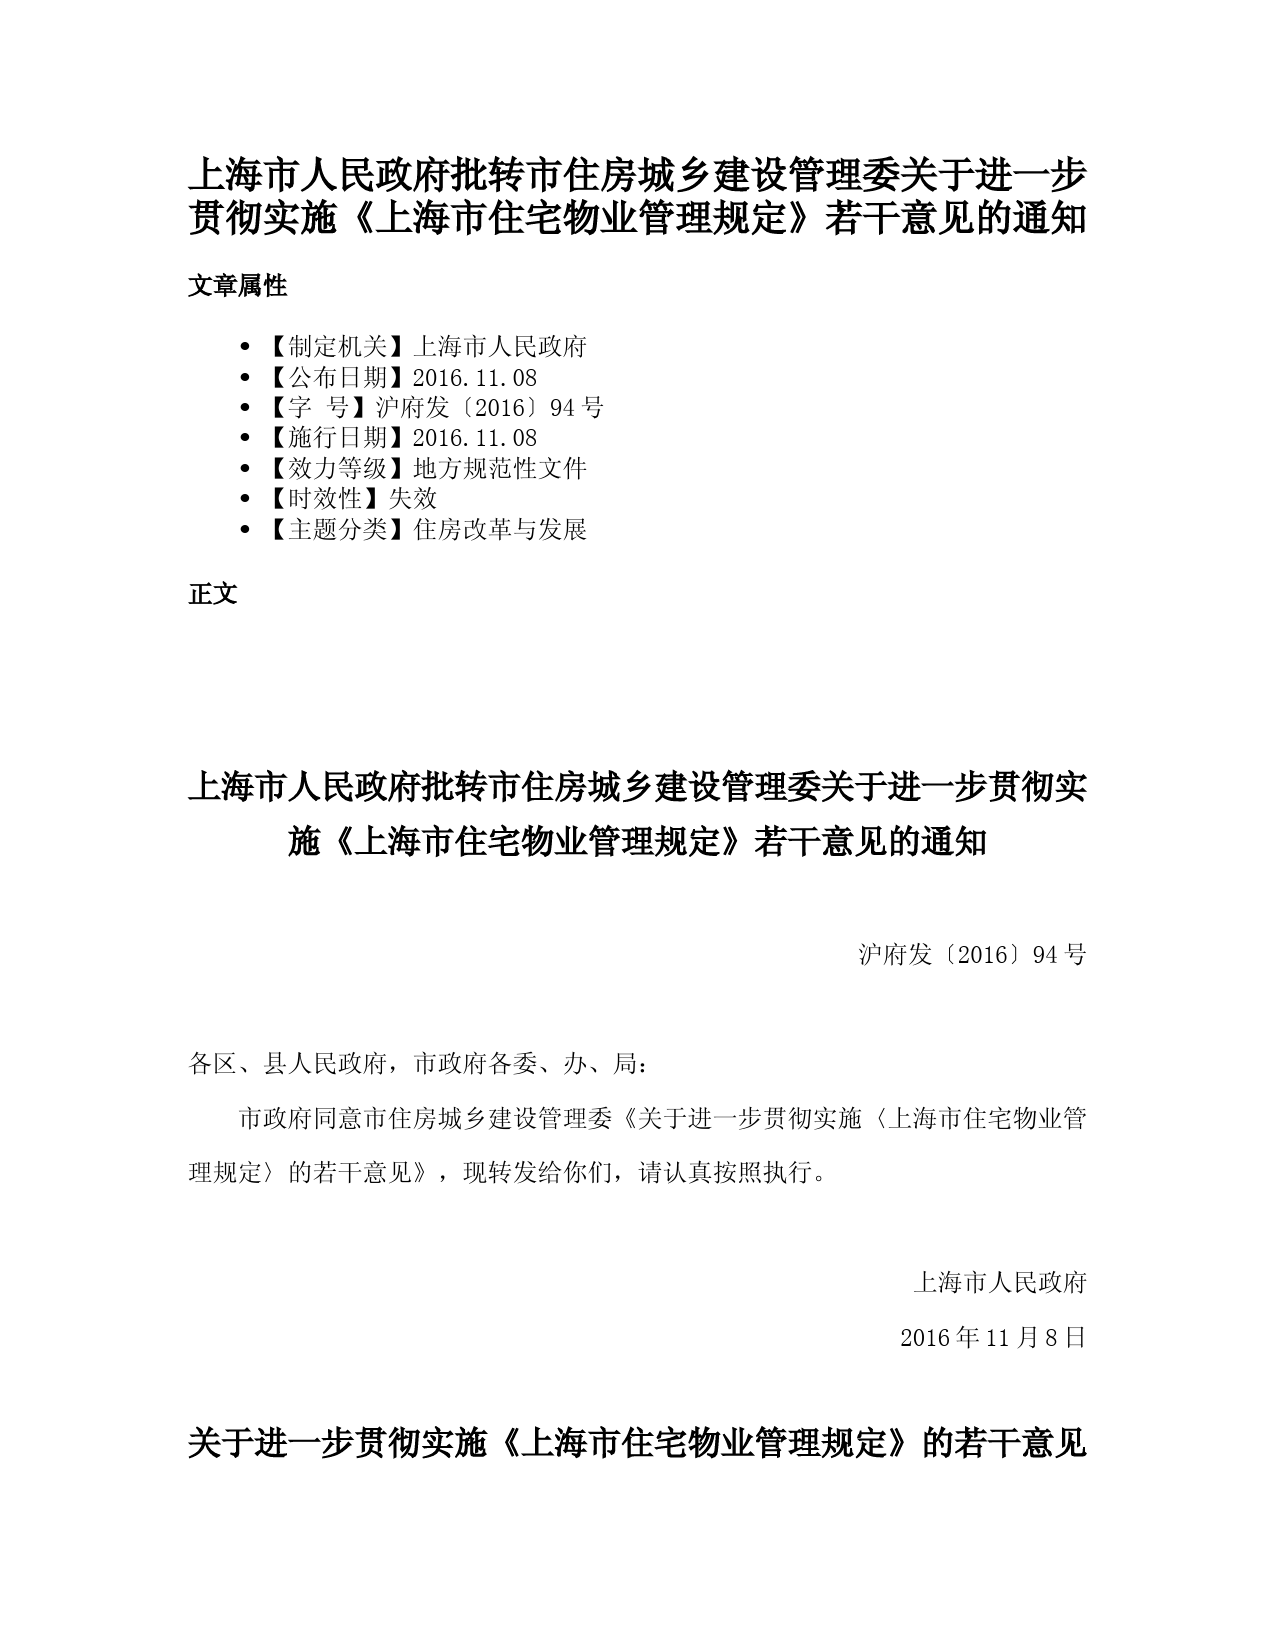 上海市人民政府批转市住房城乡建设管理委关于进一步贯彻实施《上海市住宅物业管理规定》若干意见的通知